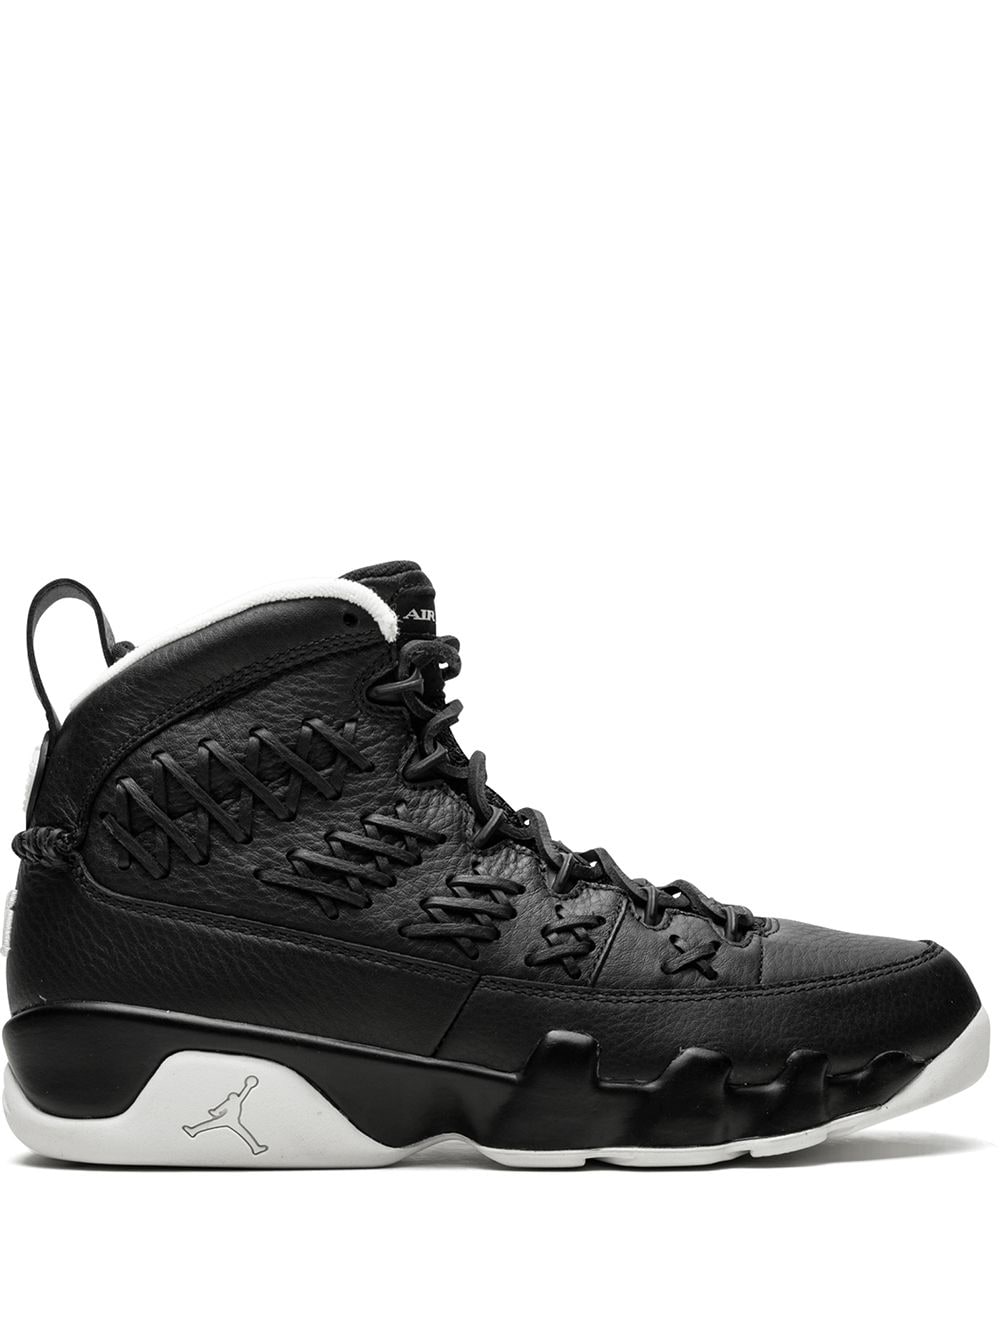 Jordan Air Jordan 9 RET Pinnacle Pack "Baseball Glove" sneakers - Black von Jordan